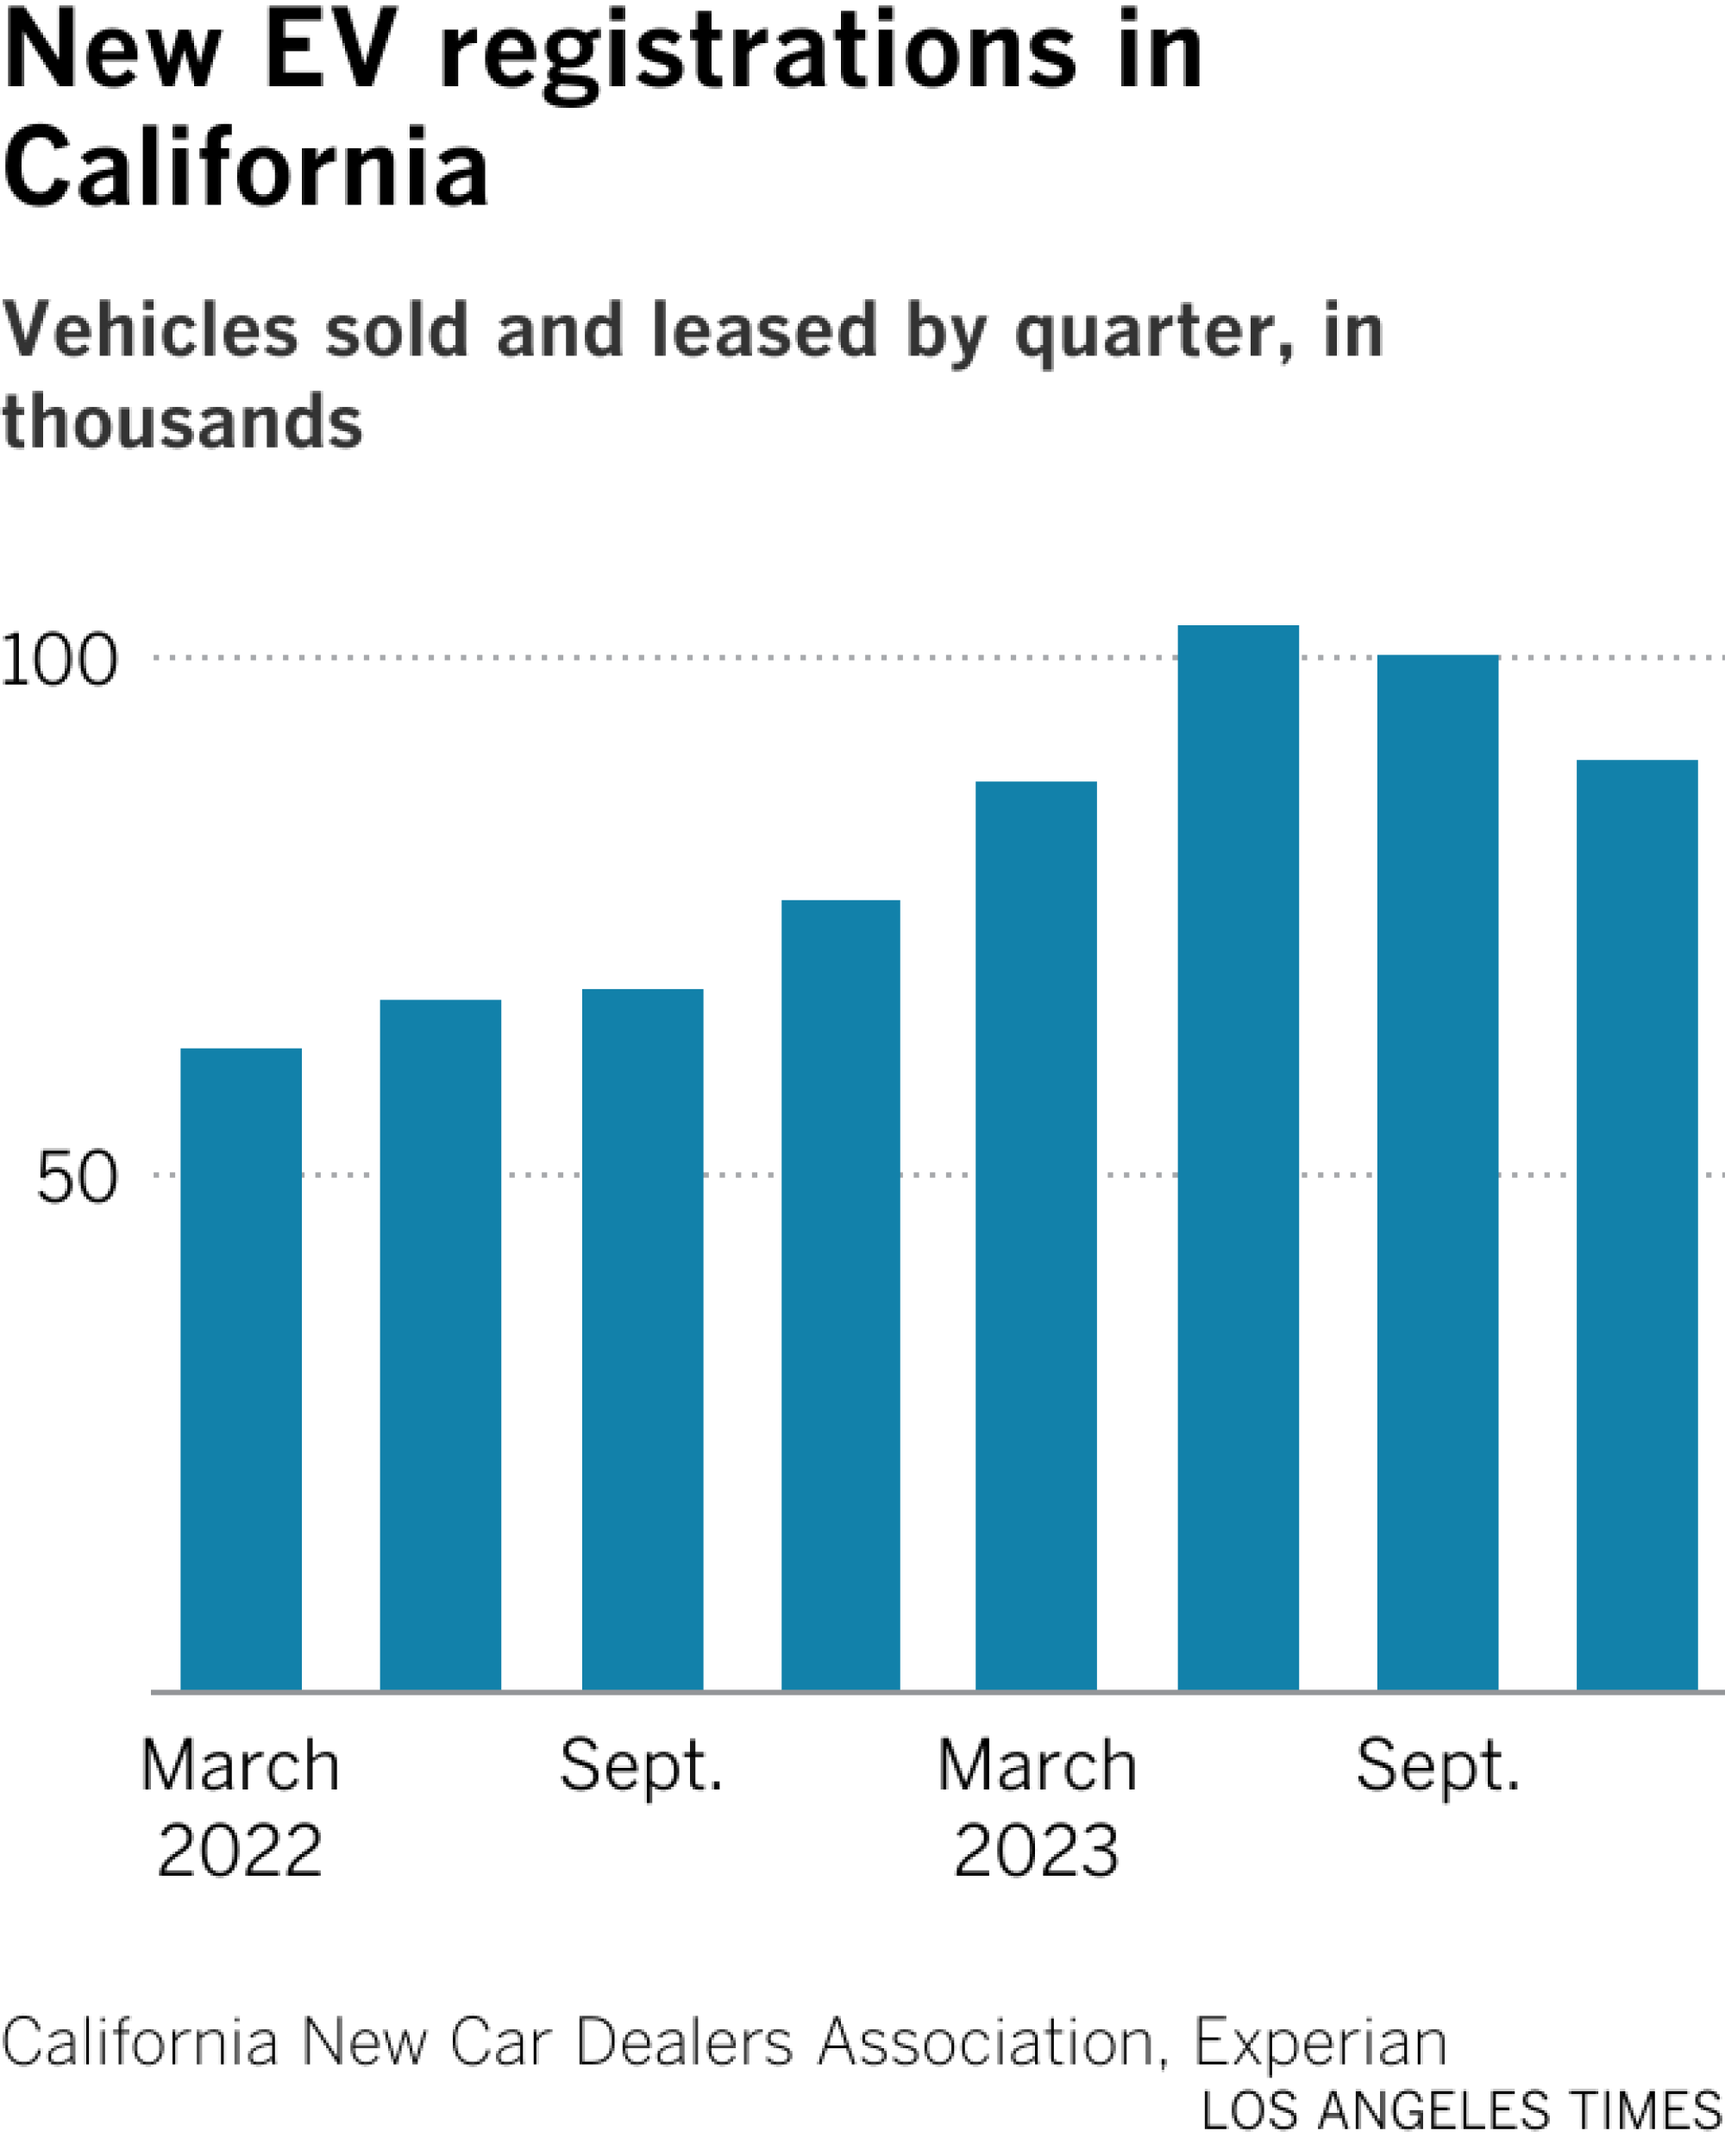 Das Balkendiagramm zeigt die verkauften Elektrofahrzeuge pro Quartal.  Im zweiten Quartal 2023 erreichten die Elektrofahrzeugverkäufe mit 103.000 Neuzulassungen ihren Höhepunkt.  Im vierten Quartal gingen die Verkäufe auf rund 90.000 zurück.